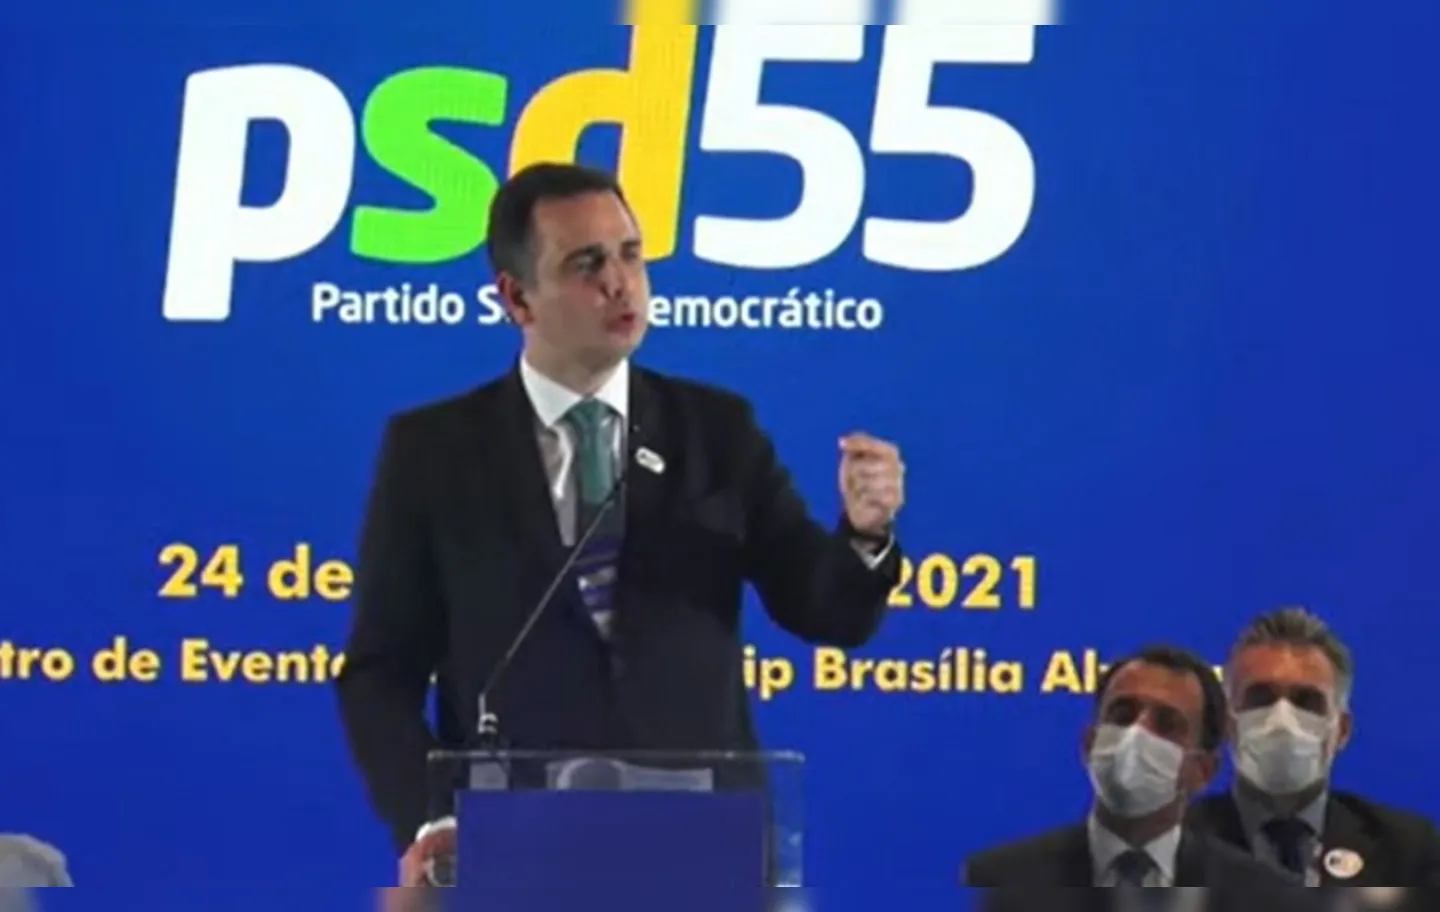 Com referências a Juscelino Kubitschek e Tancredo Neves, presidente do Senado criticou "política do radicalismo" | Foto: Reprodução | YouTube